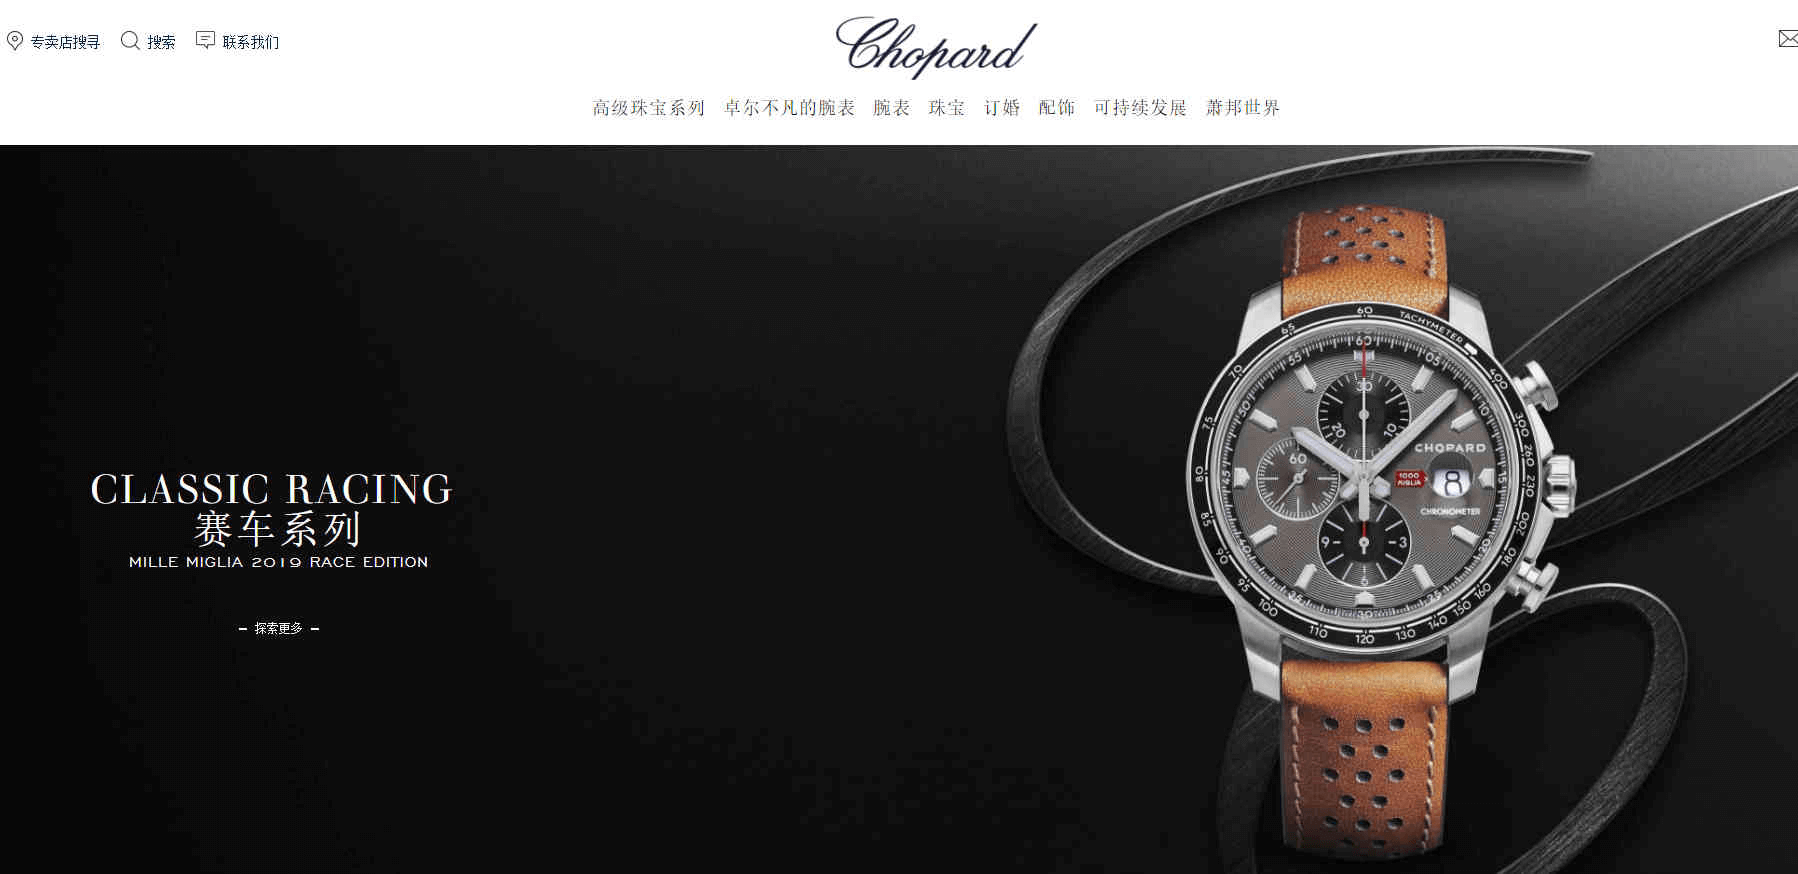 Chopard官网-Chopard萧邦中国官网 瑞士高级手表珠宝品牌